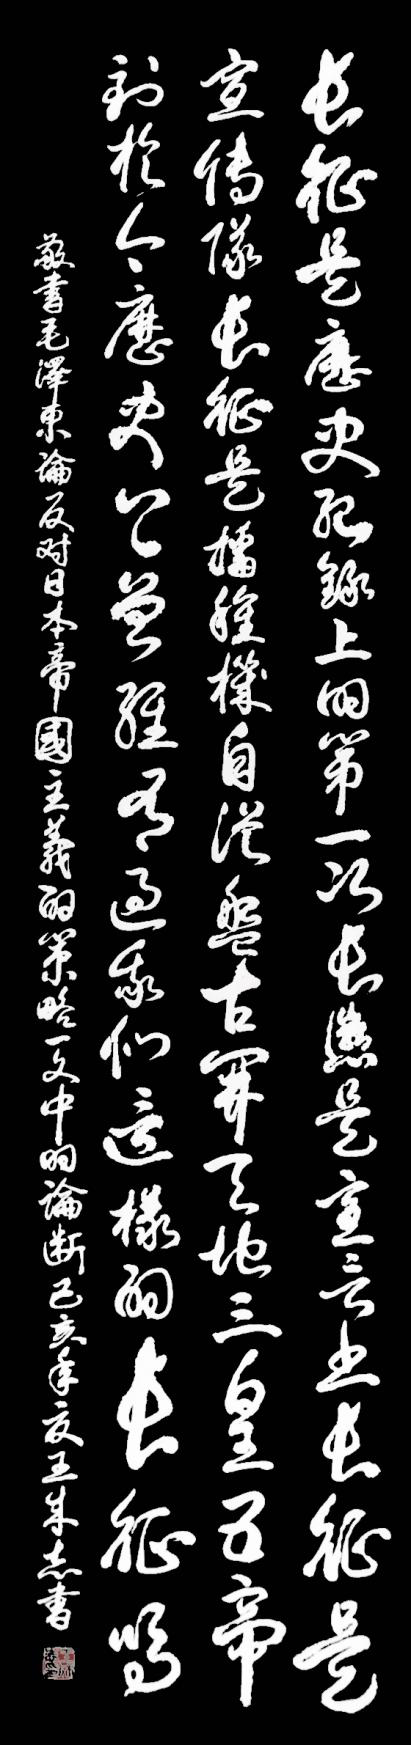 枕戈梦攥笔，挥洒留墨香 --王成志将军书法印象